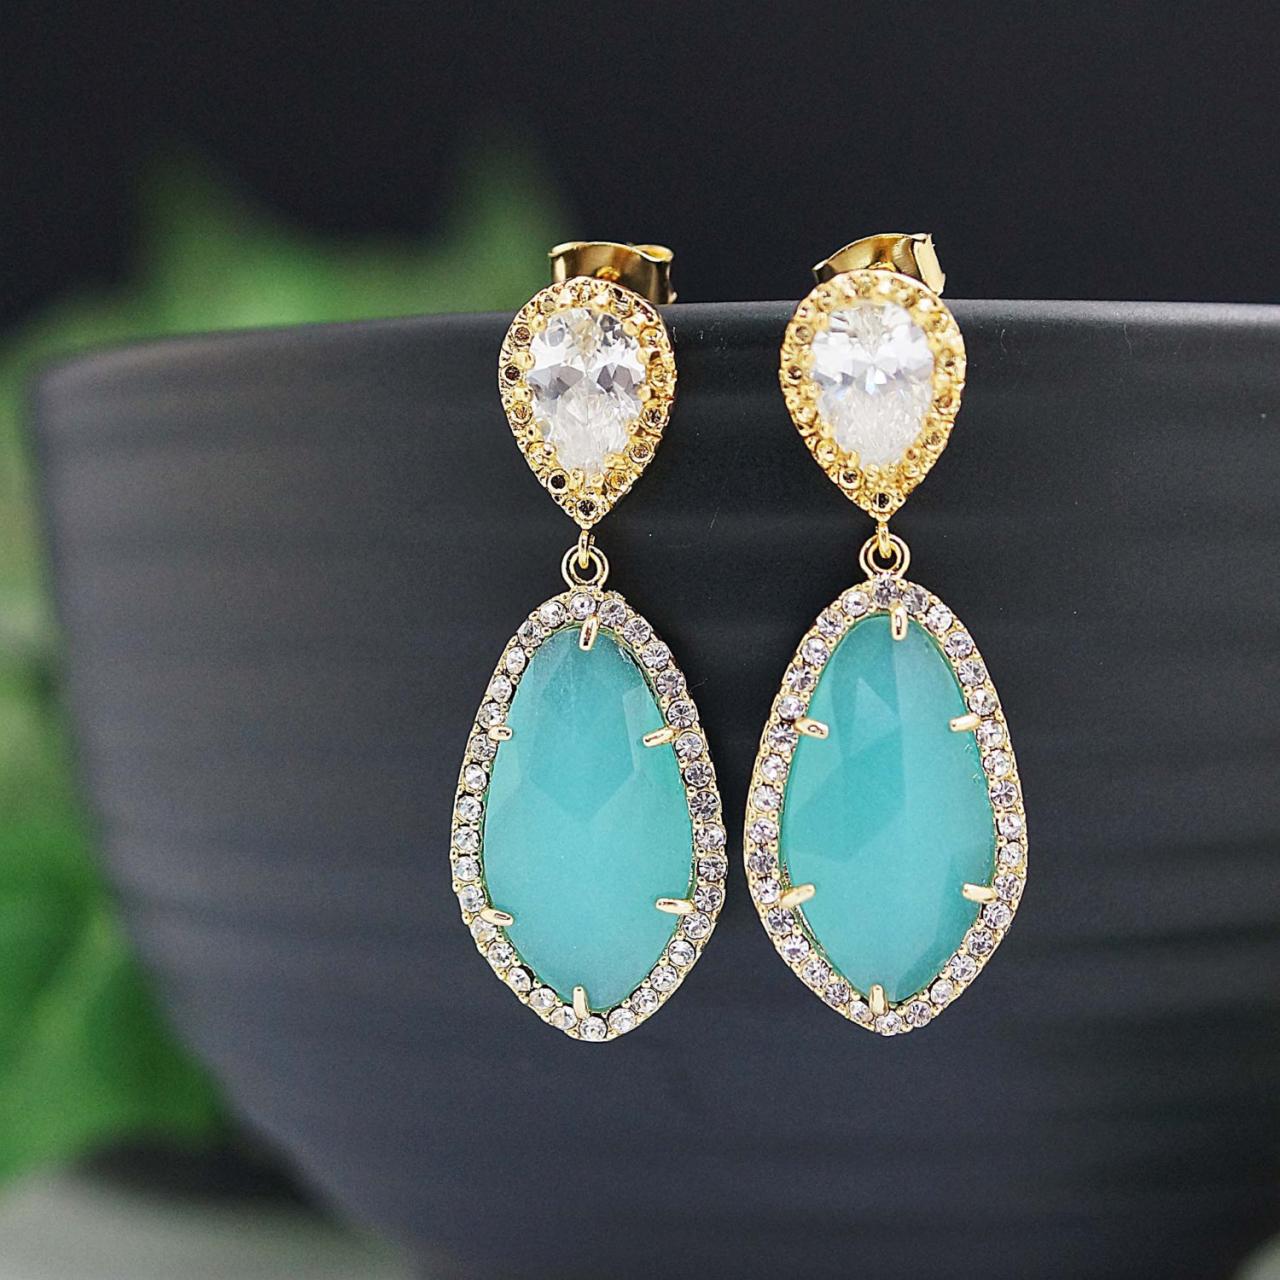 Wedding Jewelry Bridal Earrings Bridesmaid Earrings Dangle Earrings Lux Mint Opal With Cubic Zirconia Drop Earrings